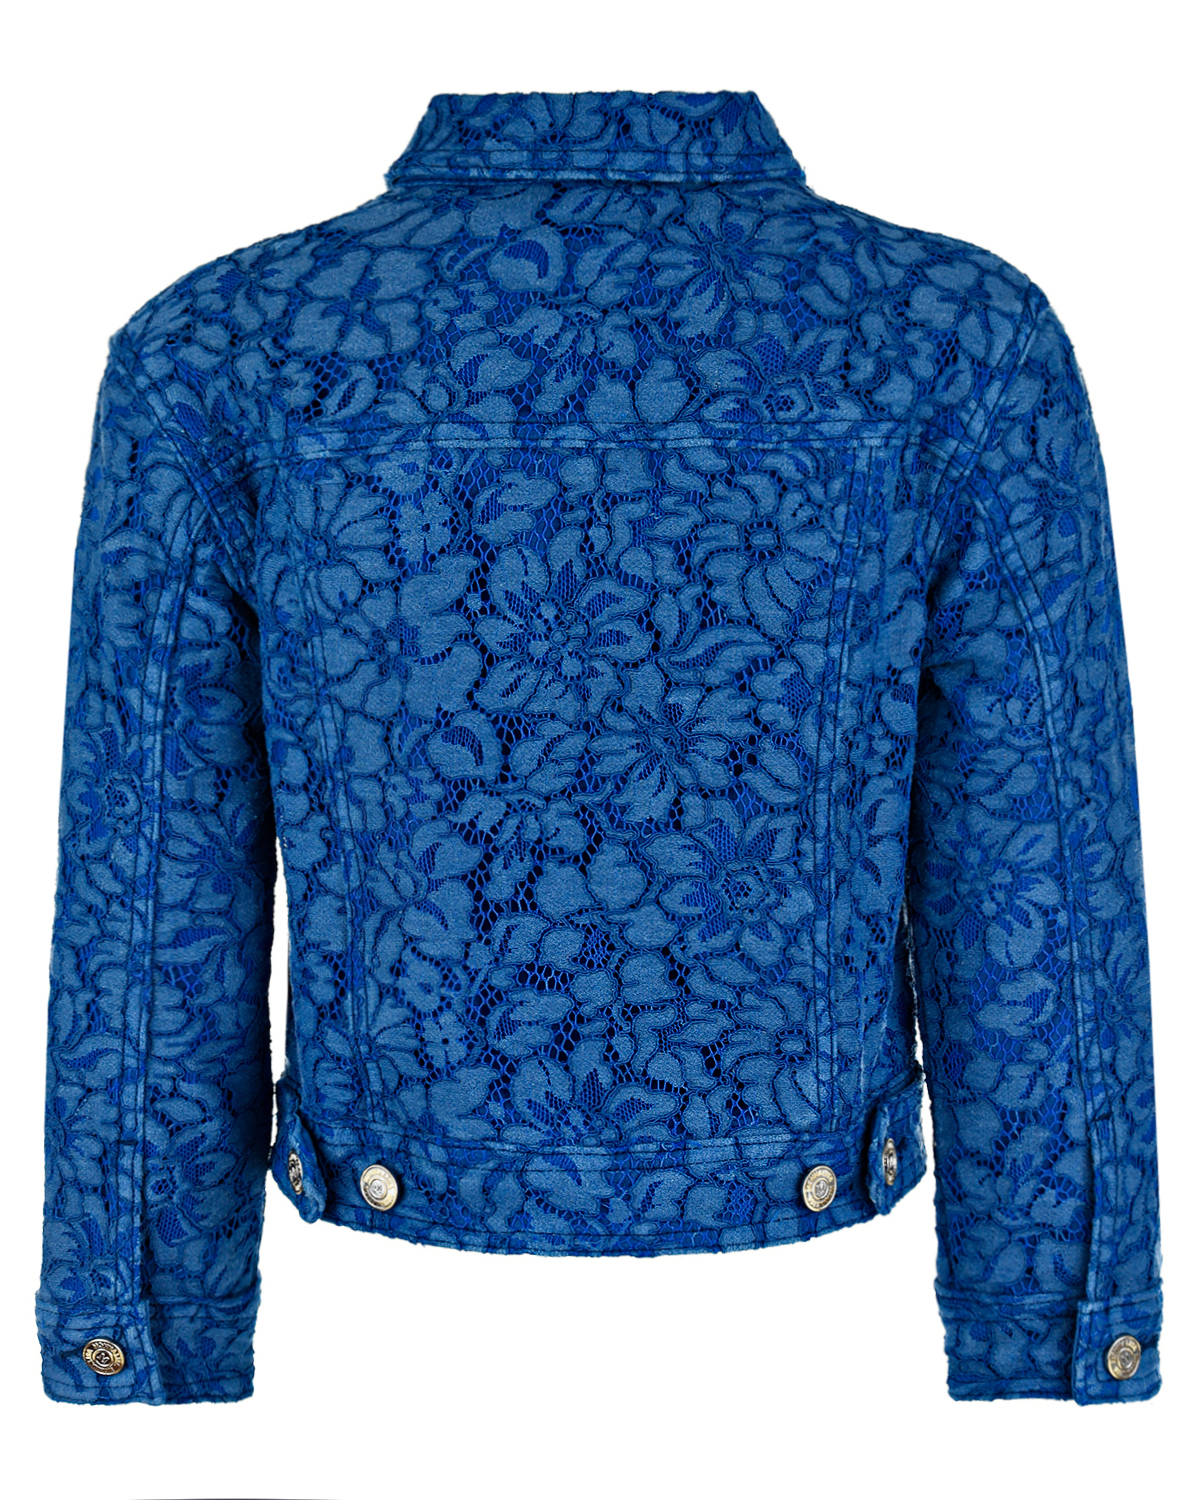 Джинсовая куртка с отделкой из гипюра Monnalisa детская, размер 128, цвет синий - фото 2